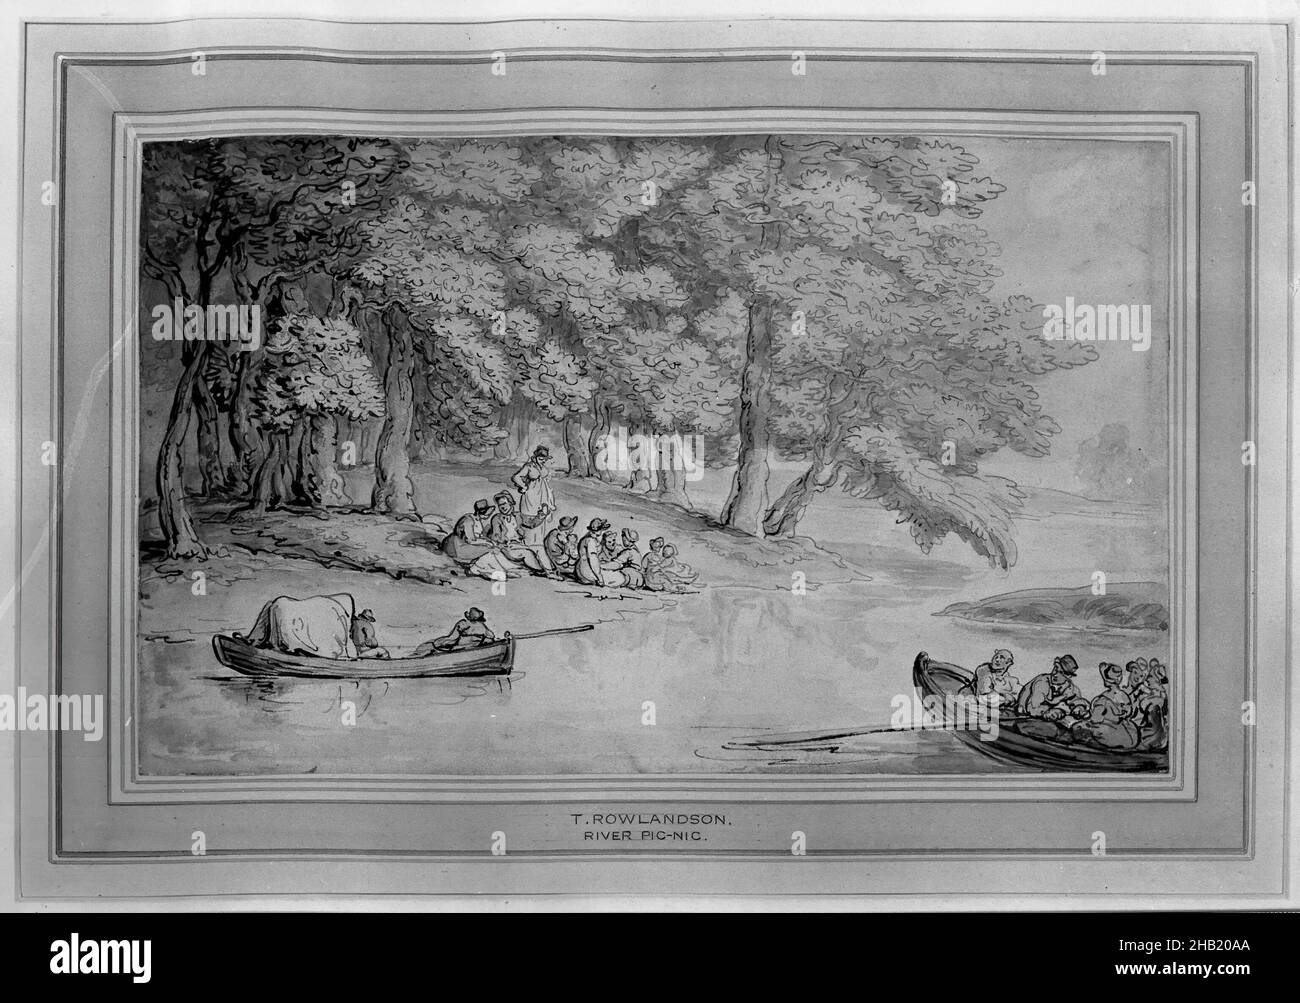 River picnic, Thomas Rowlandson, British, 1756-1827, Wash disegno su carta pesante incollato giù, ca. 1805-1810, 5 11/16 x 9 5/16 pollici, 14,5 x 23,6 cm, barche, canoe, cibo e bevande, tempo libero, canottaggio Foto Stock